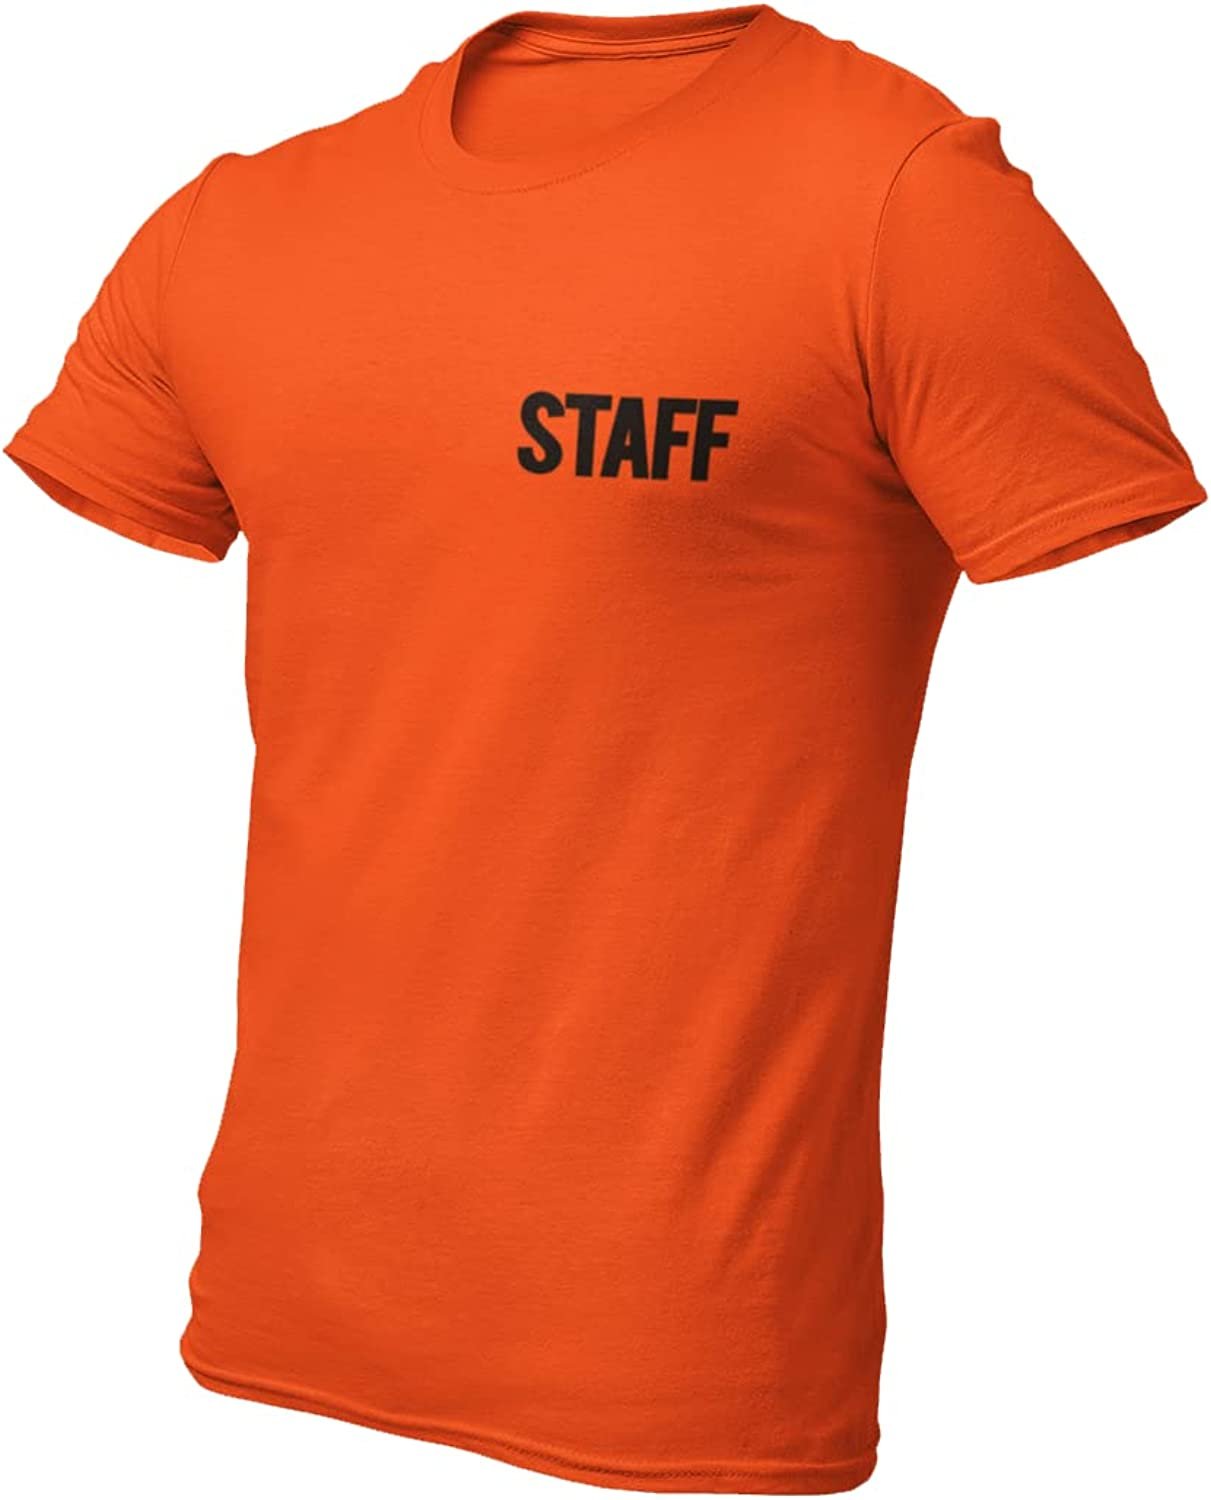 Herren Staff T-Shirt Siebdruck-T-Shirt (Brust- und Rückendruck, Orange)